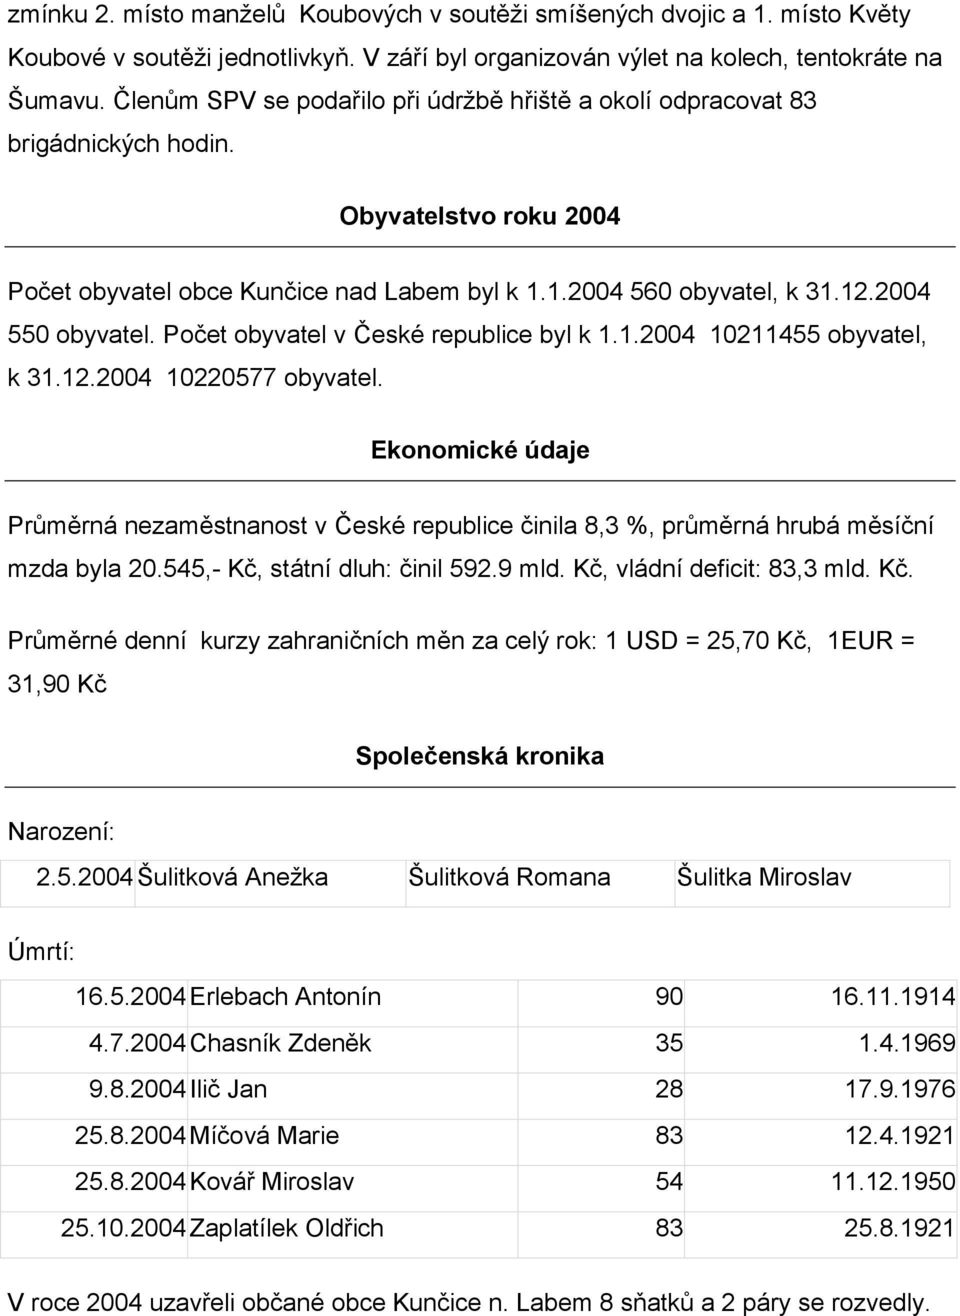 Počet obyvatel v České republice byl k 1.1.2004 10211455 obyvatel, k 31.12.2004 10220577 obyvatel.